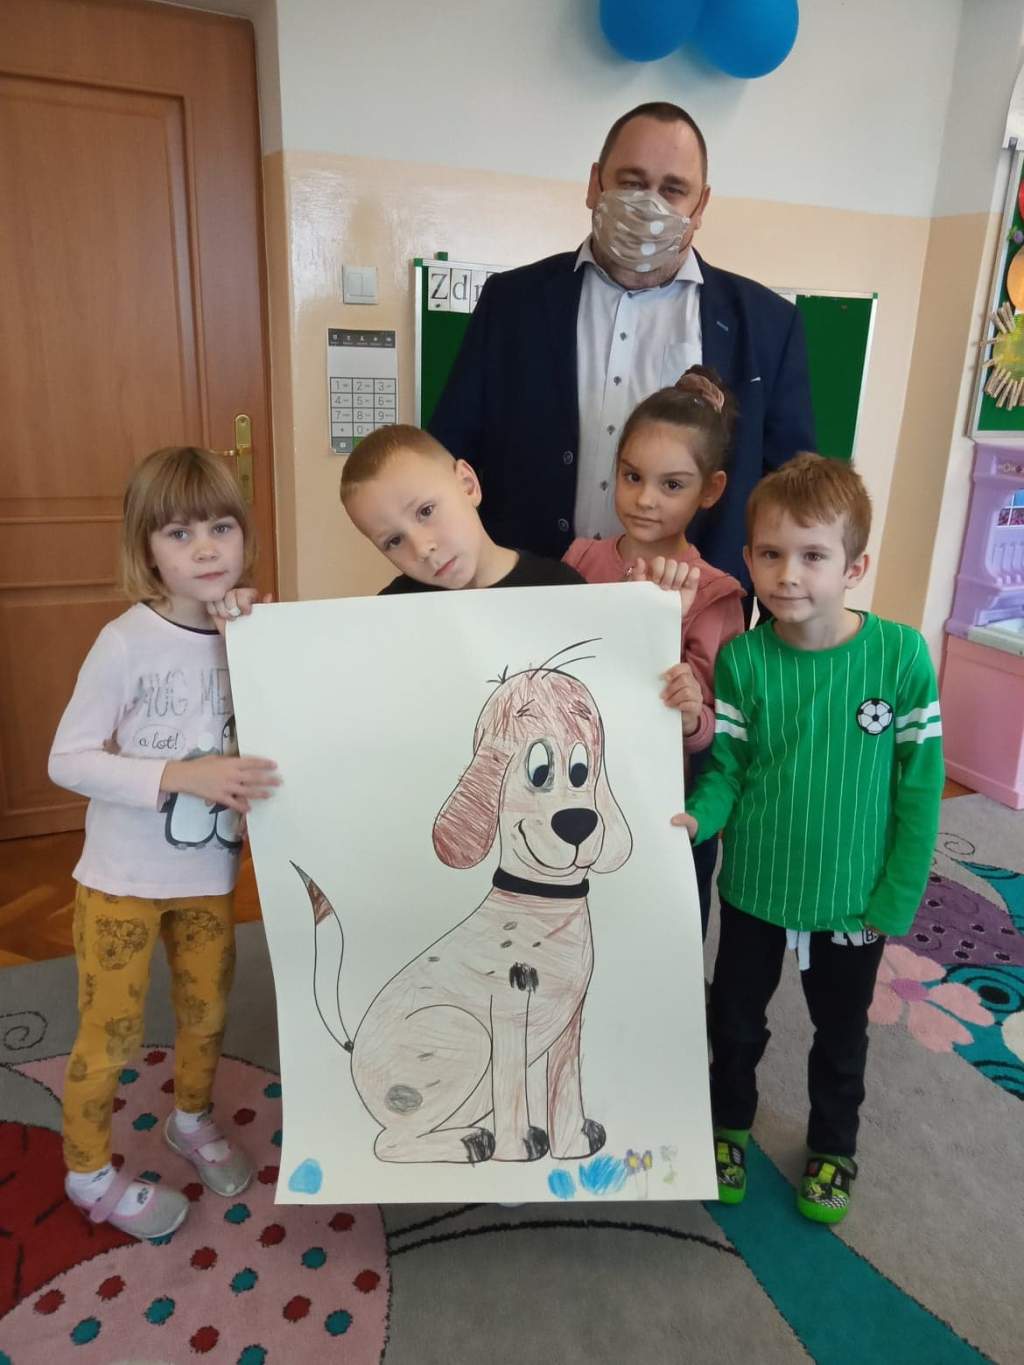 Zdjęcie przedstawia dyrektora biblioteki i czwórkę przedszkolaków w przedszkolu trzymających dużą kartkę z pokolorowanym rysunkiem psa